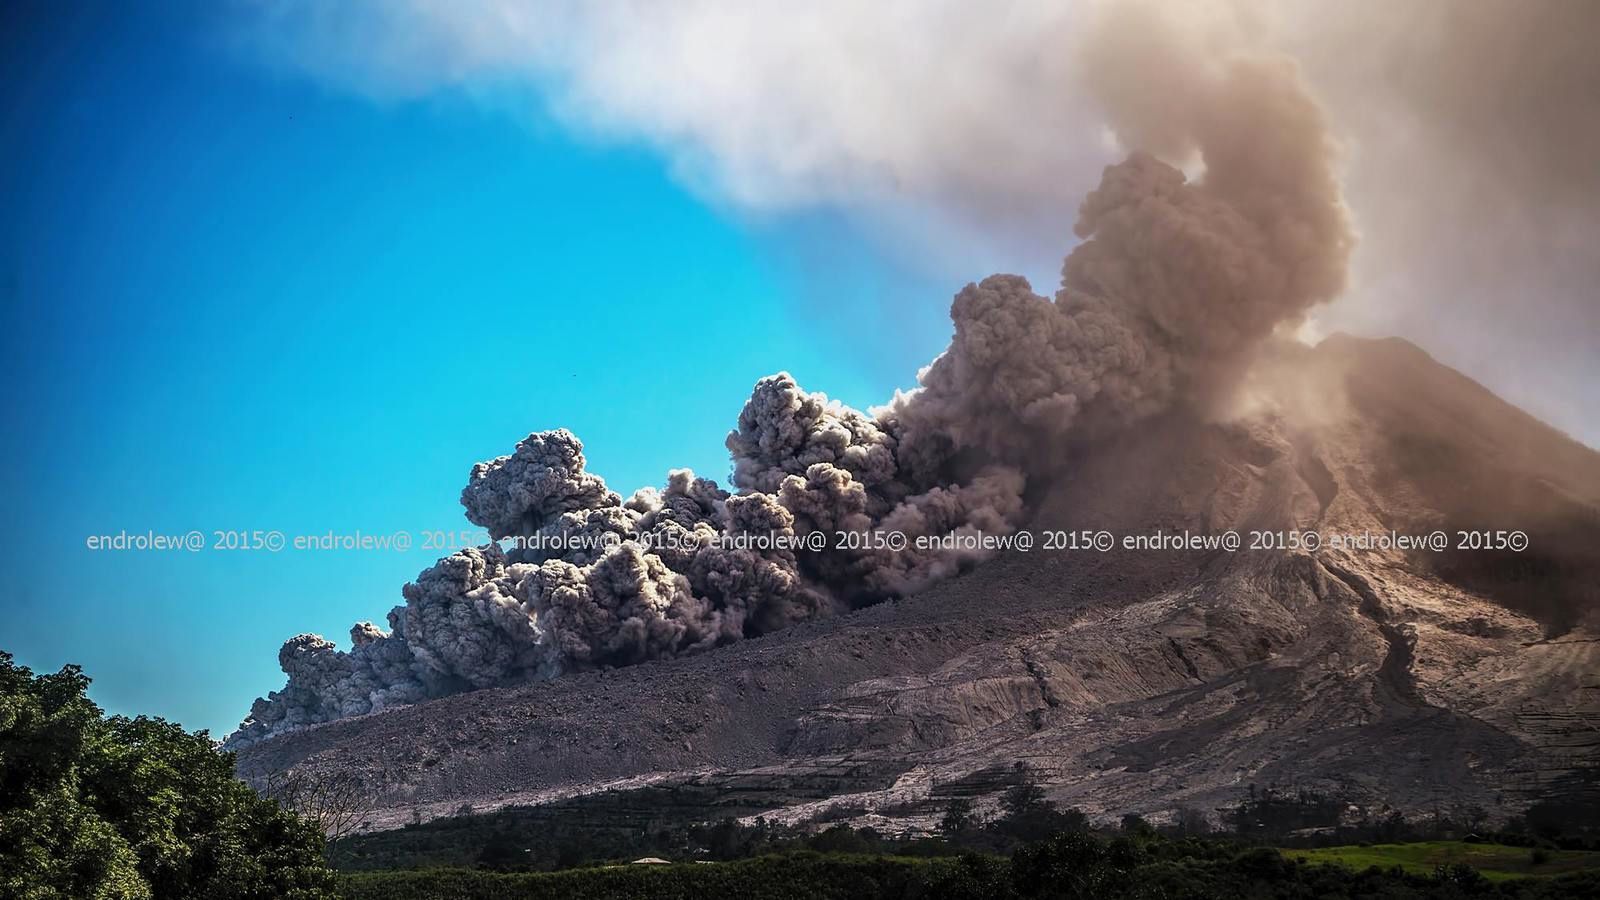 Sinabung  et une coulée pyroclastique, vus du sud-est, le 29 juin à 15h02 et 15h08 - photos endrolew@